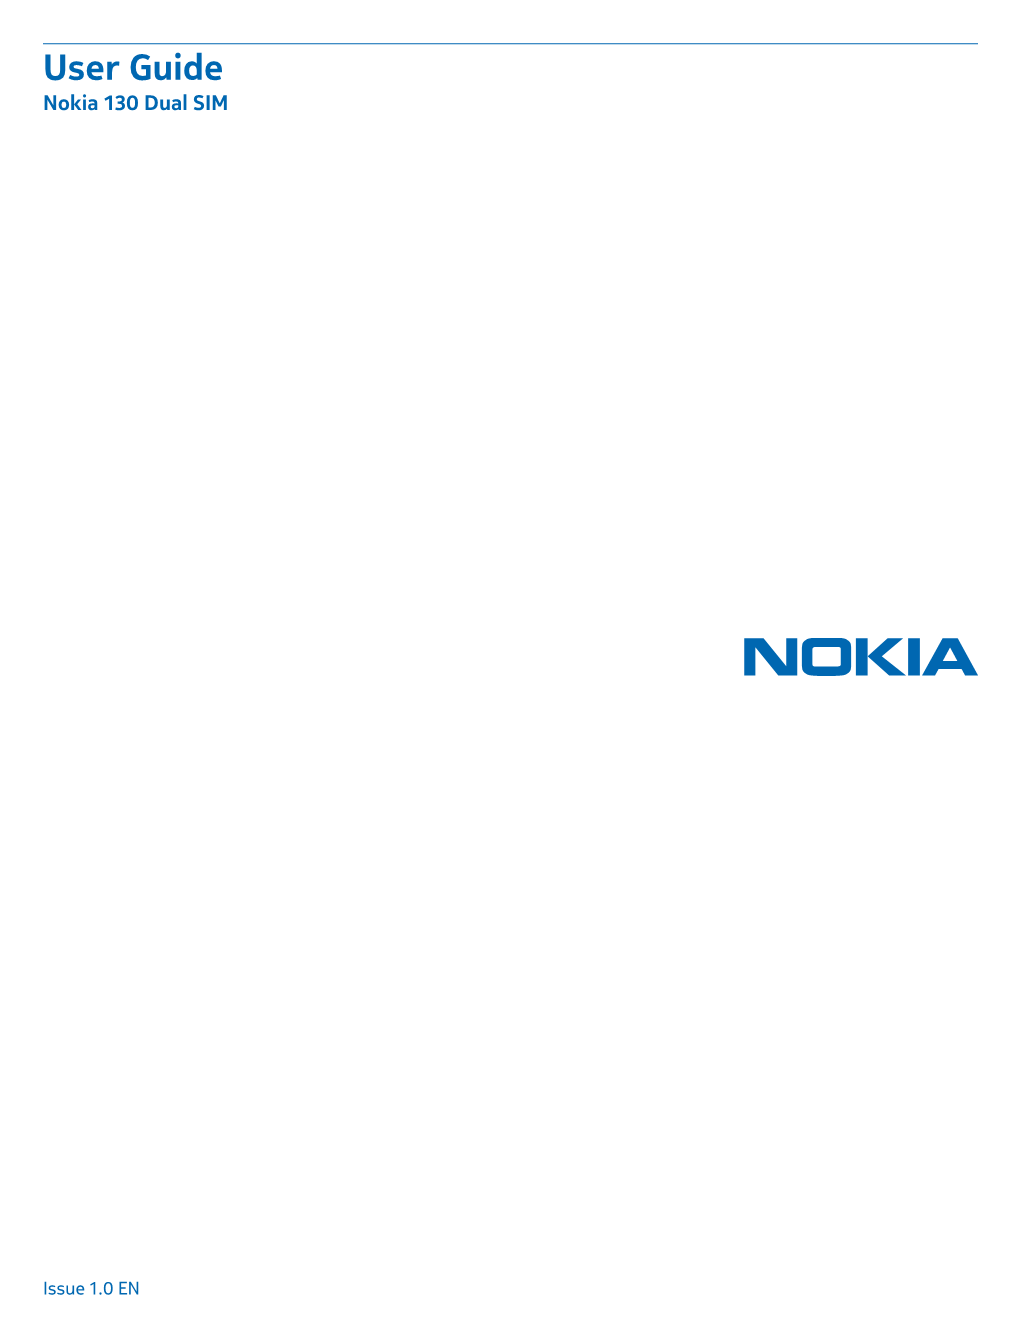 Nokia 130 Dual SIM User Guide